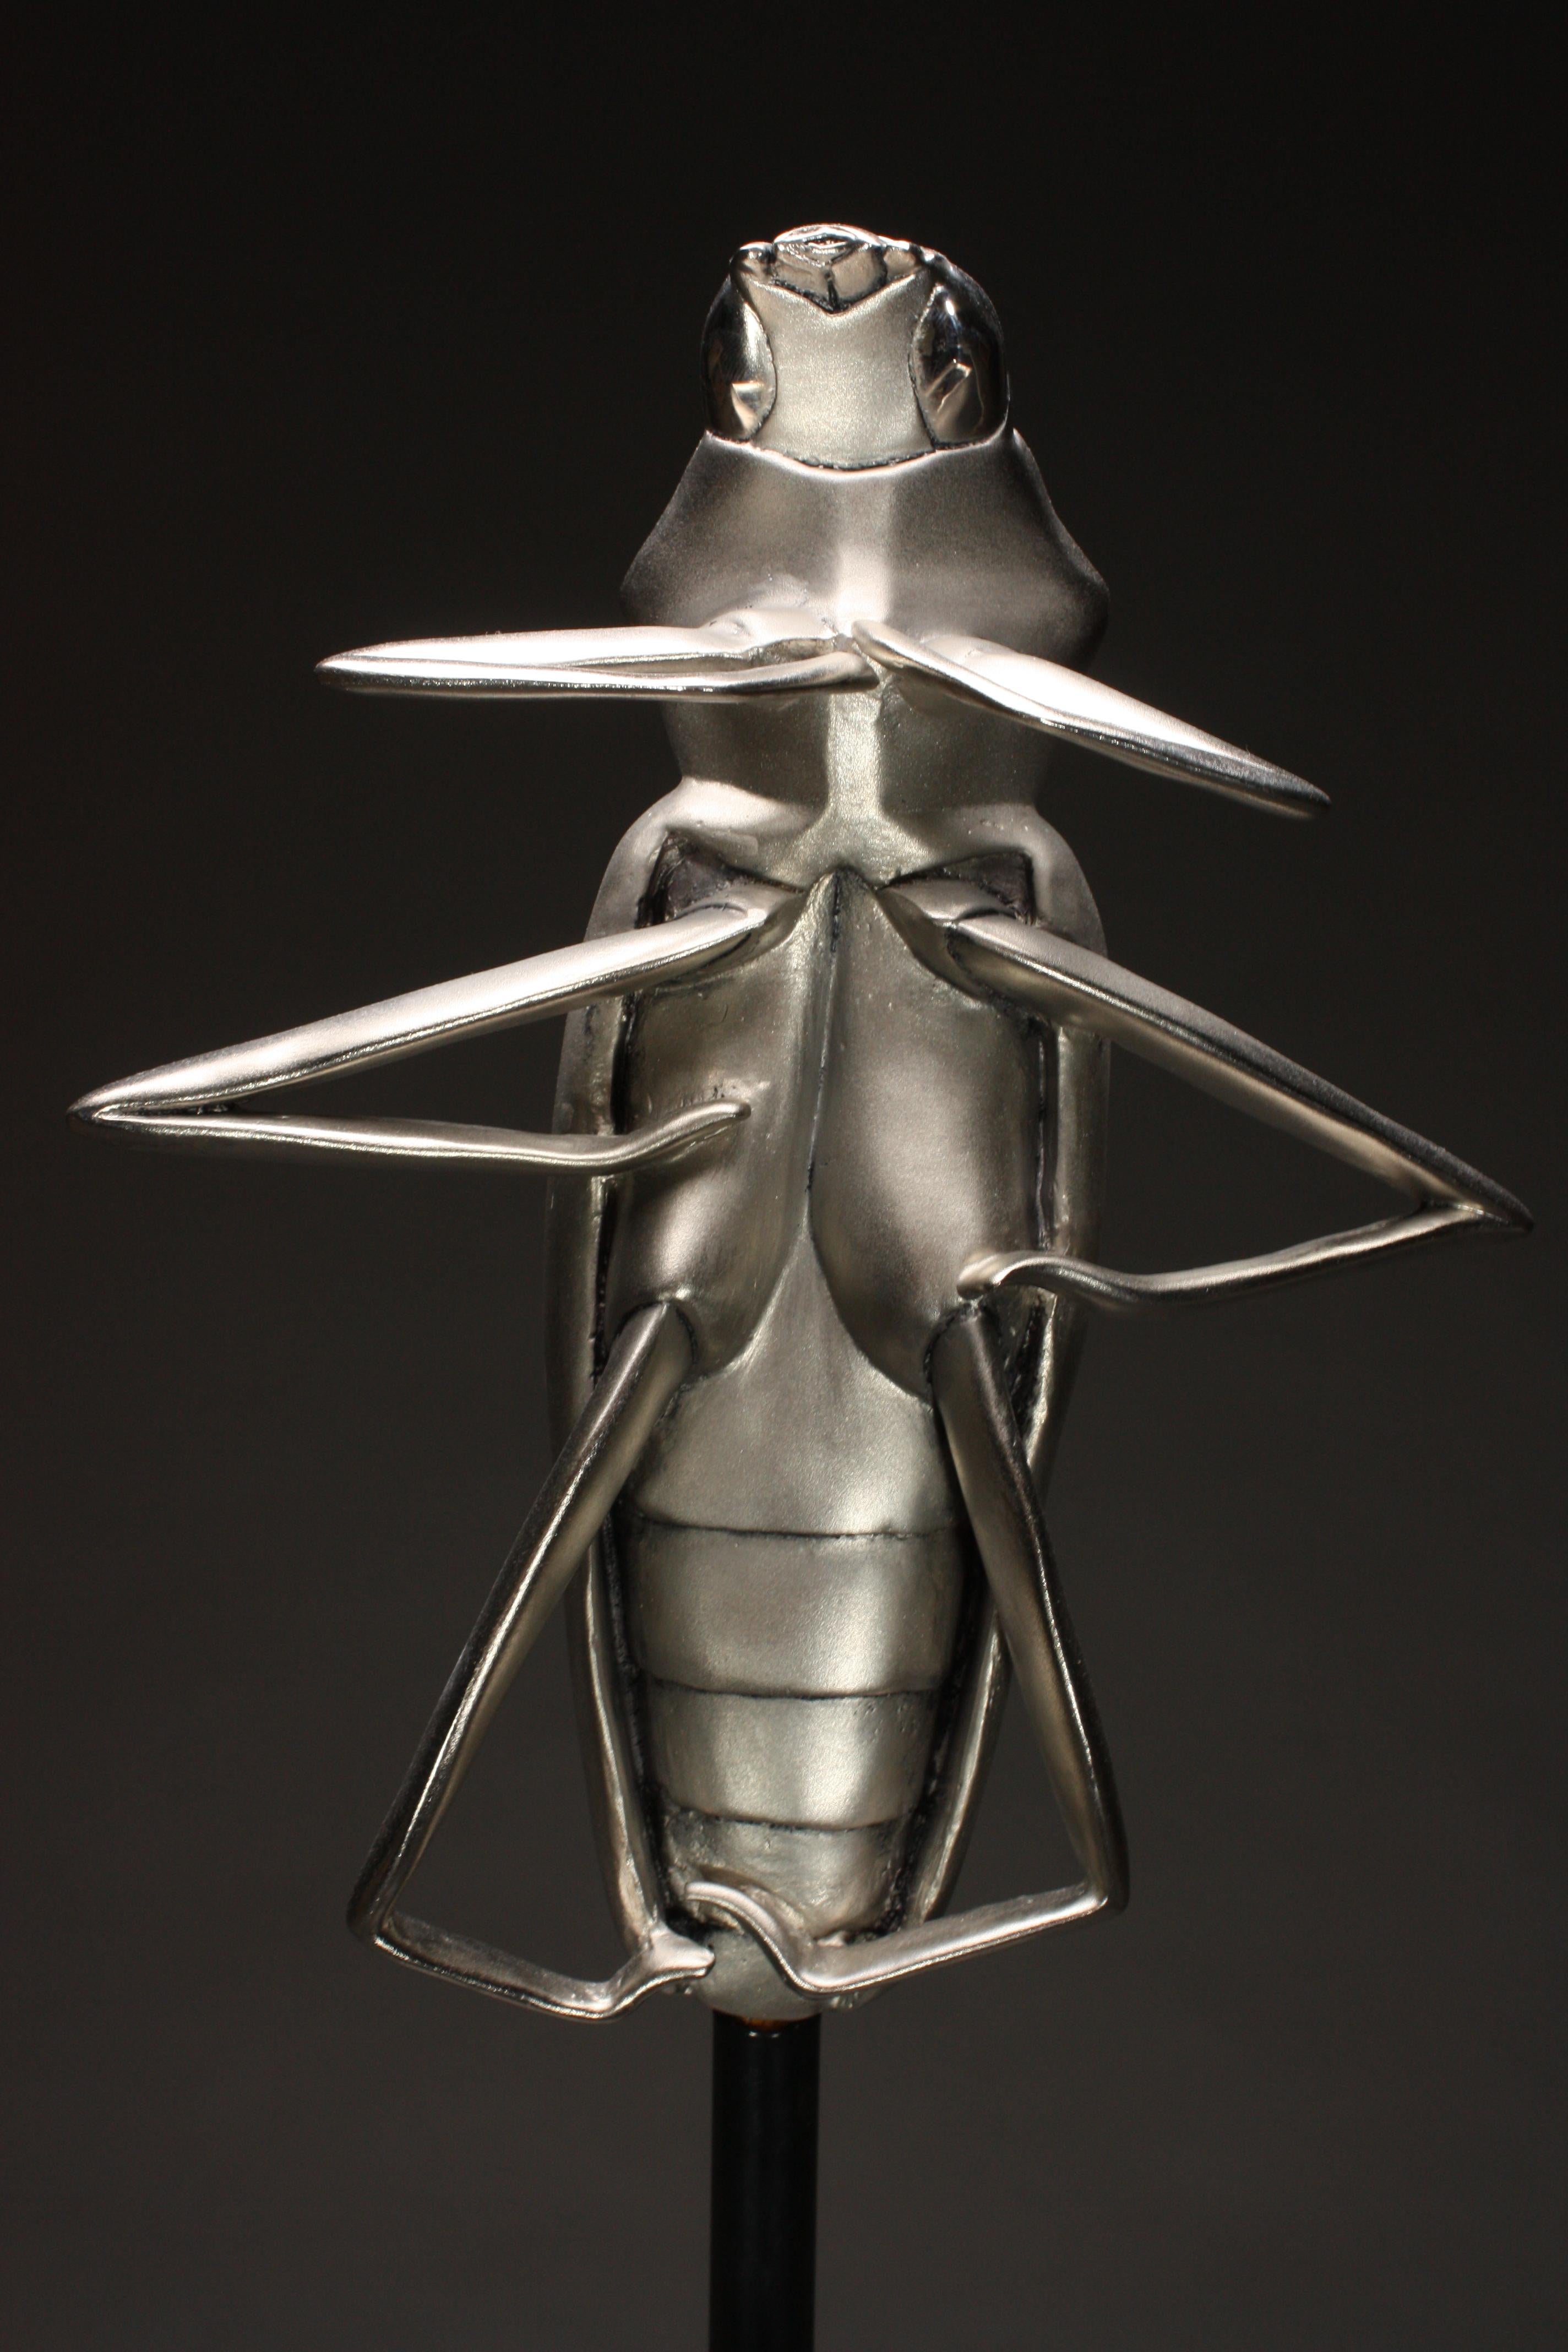 Cette étonnante sculpture de scarabée en bronze nickelé tourne en douceur sur sa base en acier revêtu de poudre avec un roulement à billes de haute qualité.  L'insecte est sculpté à l'origine dans l'argile, moulé puis coulé en cire pour le procédé